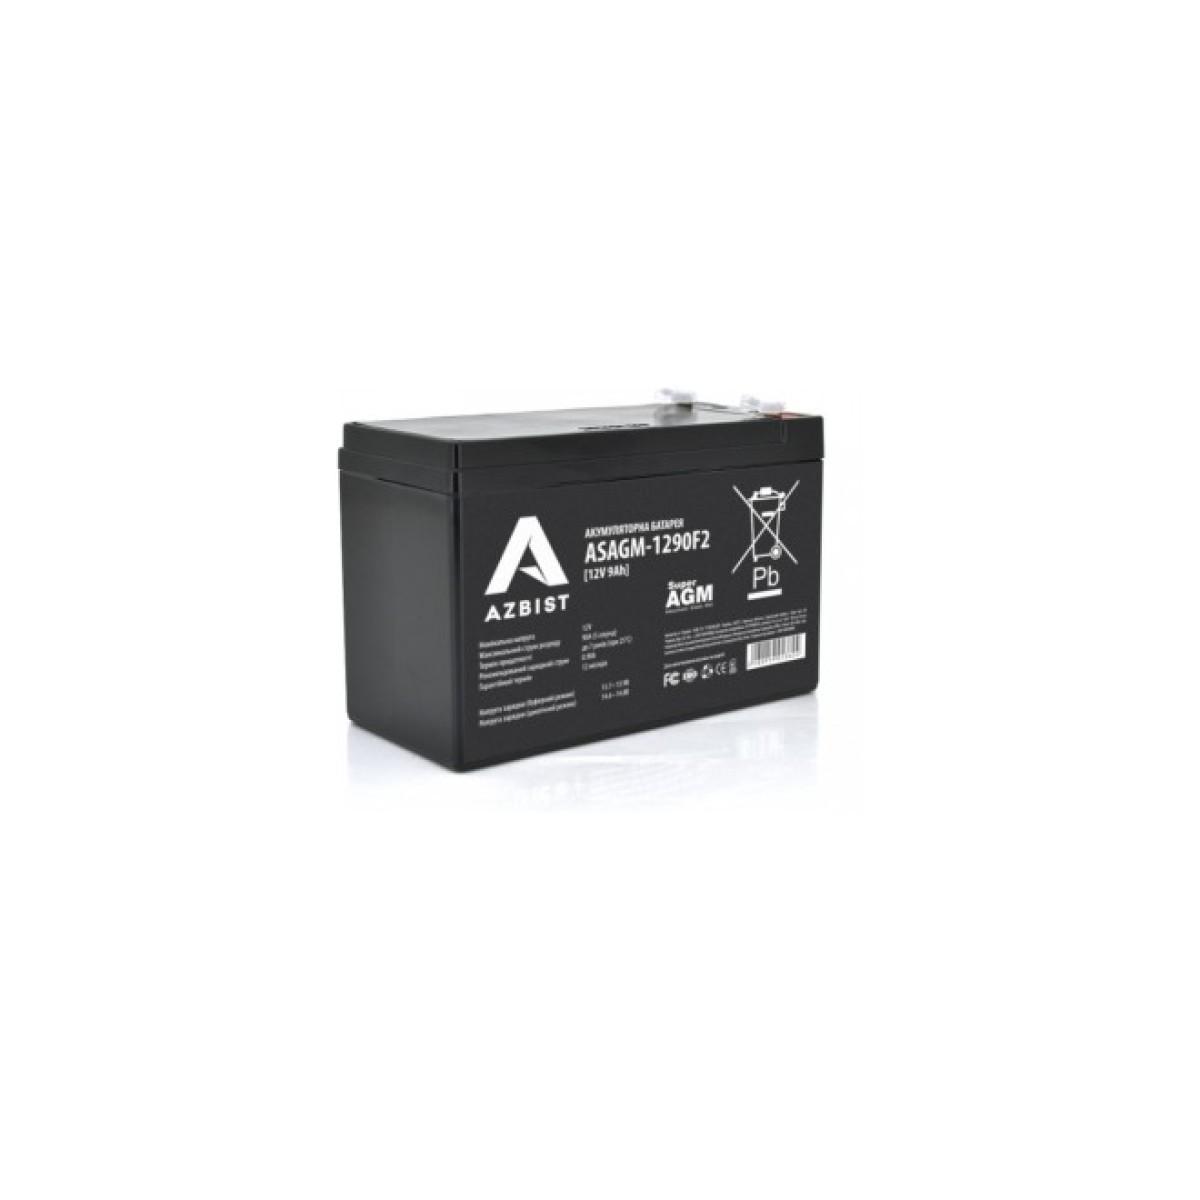 Батарея к ИБП AZBIST 12V 9Ah Super AGM (ASAGM-1290F2) 256_256.jpg